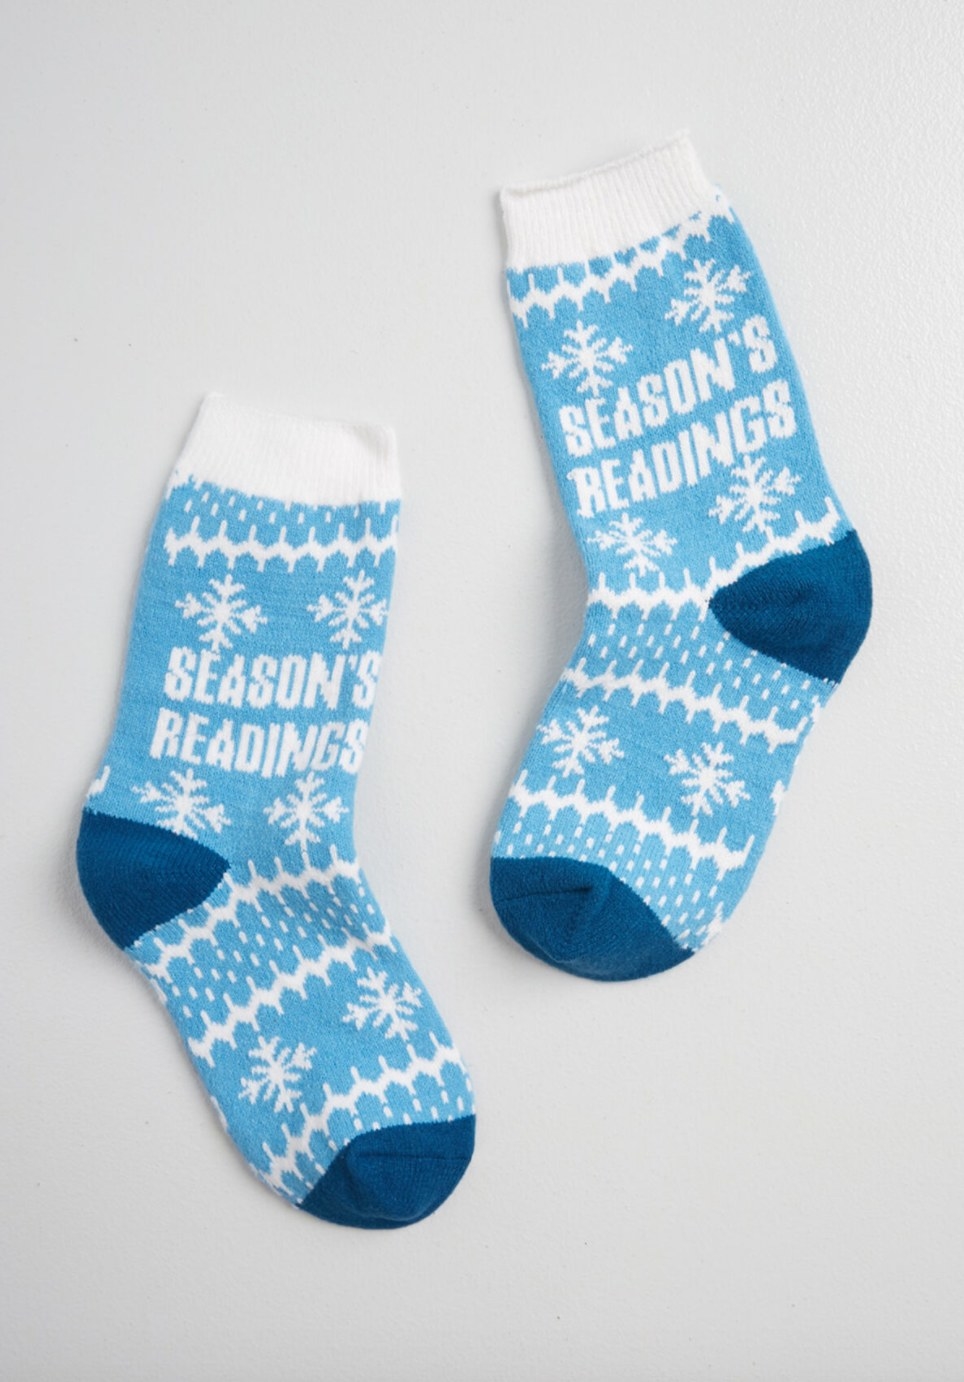 The socks in blue